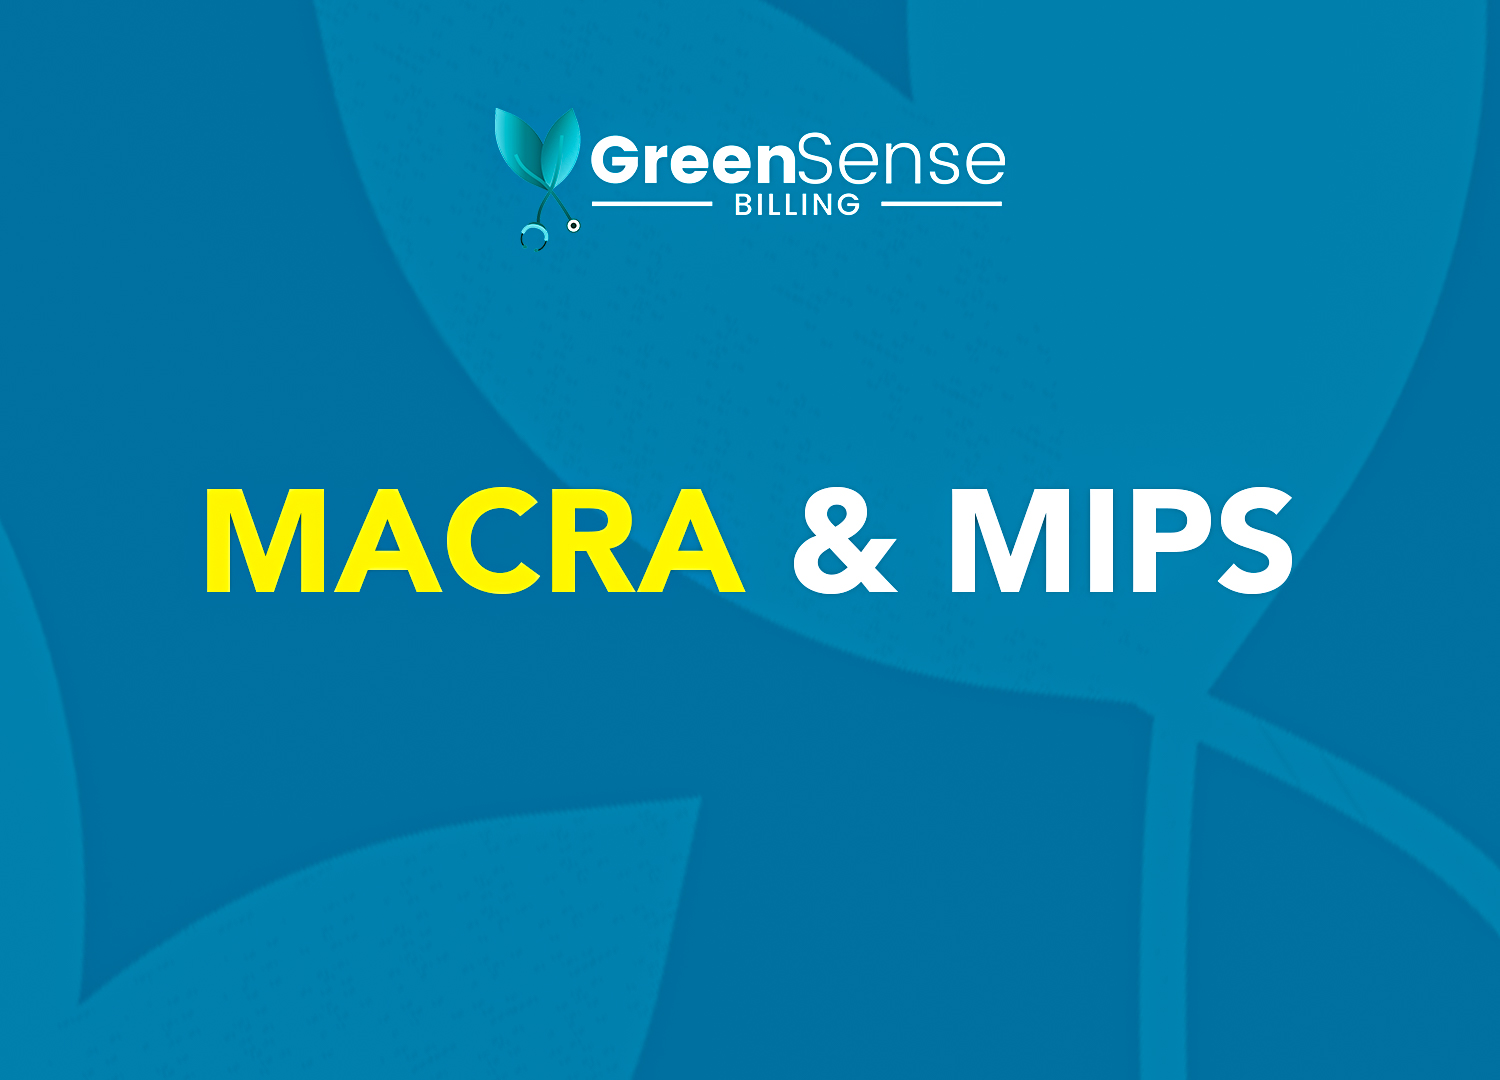 MACRA & MIPS best practices for healthcare professionals